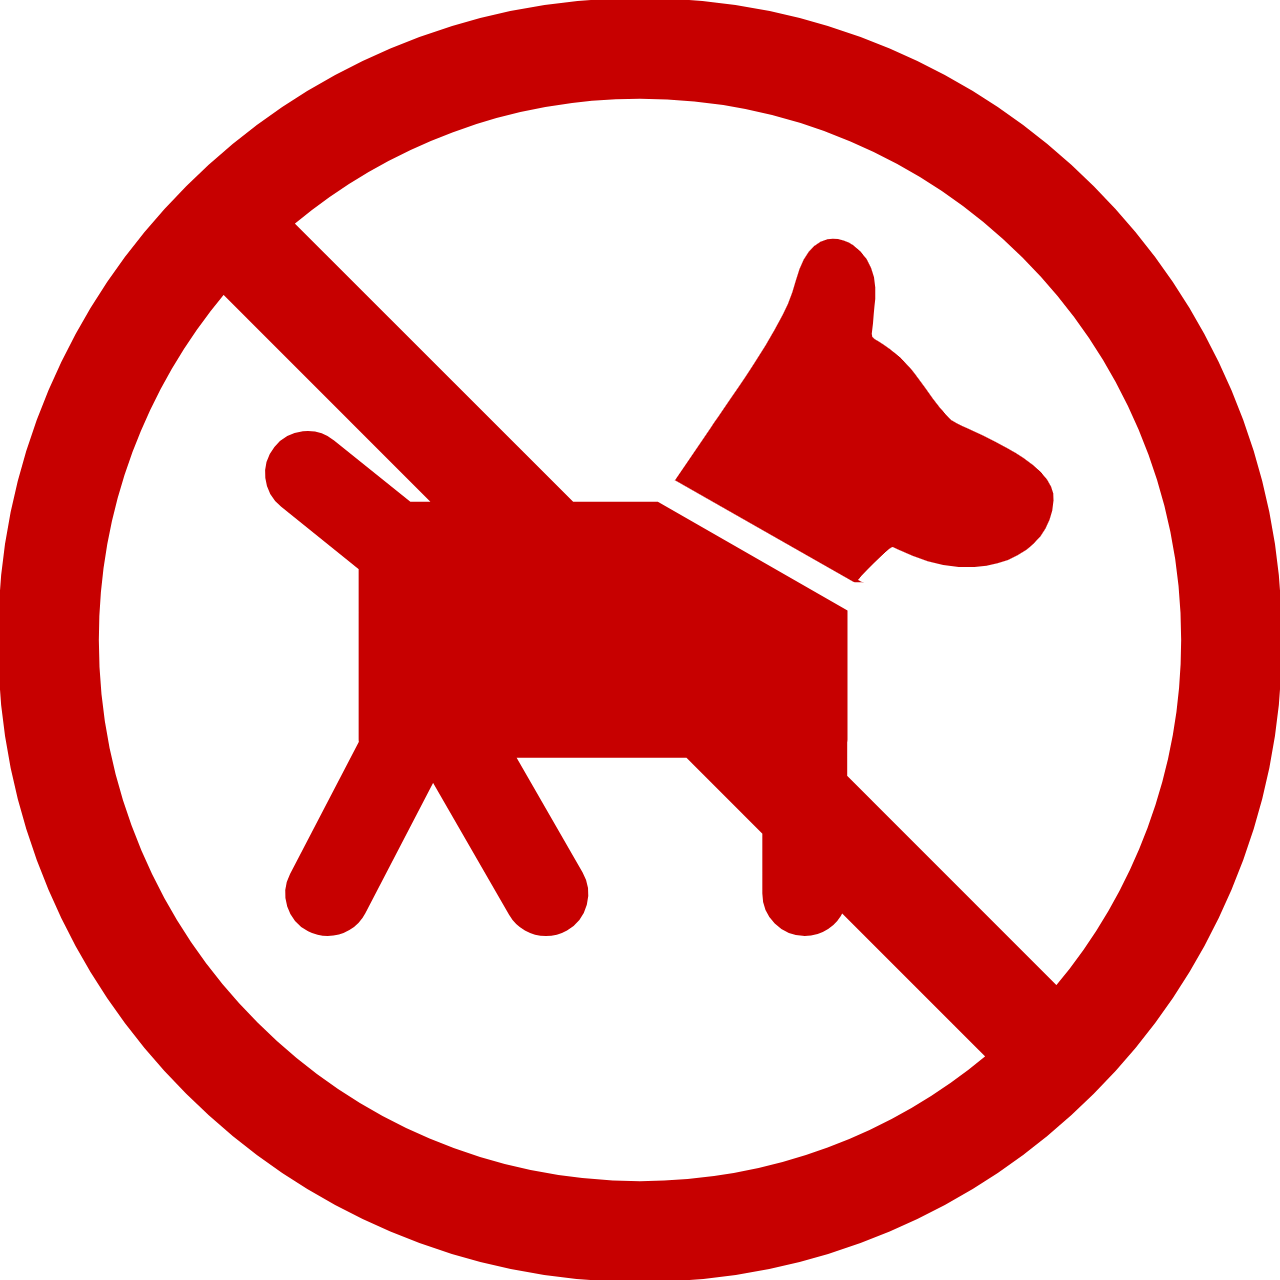 Icone interdiction des chiens